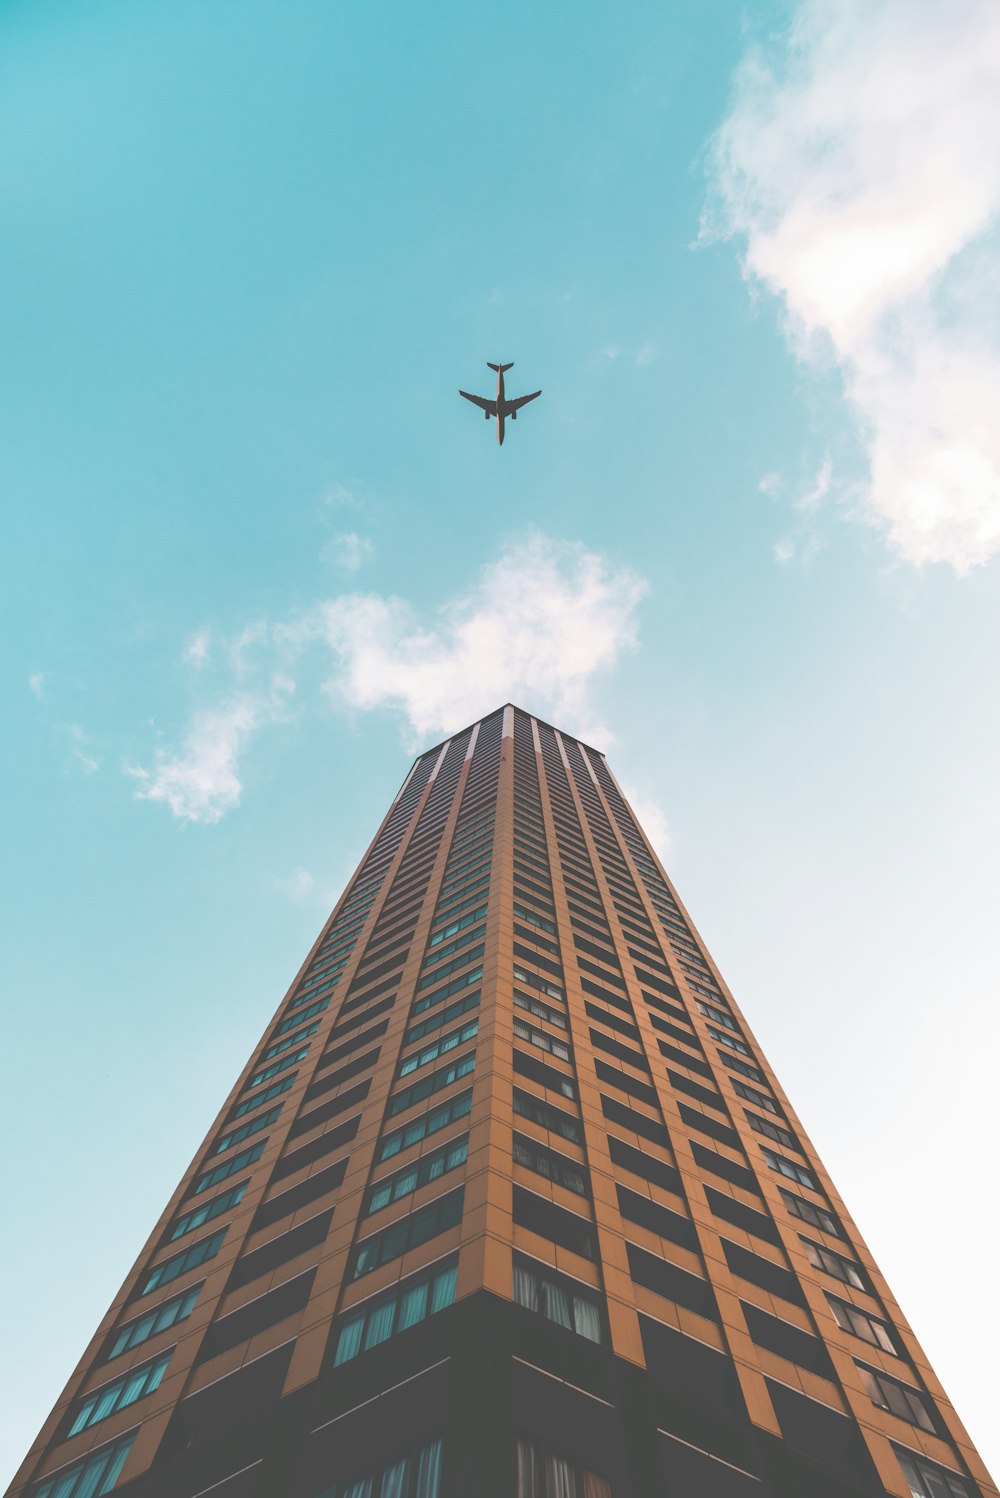 Toma de vista inferior del avión que vuela sobre el edificio de gran altura